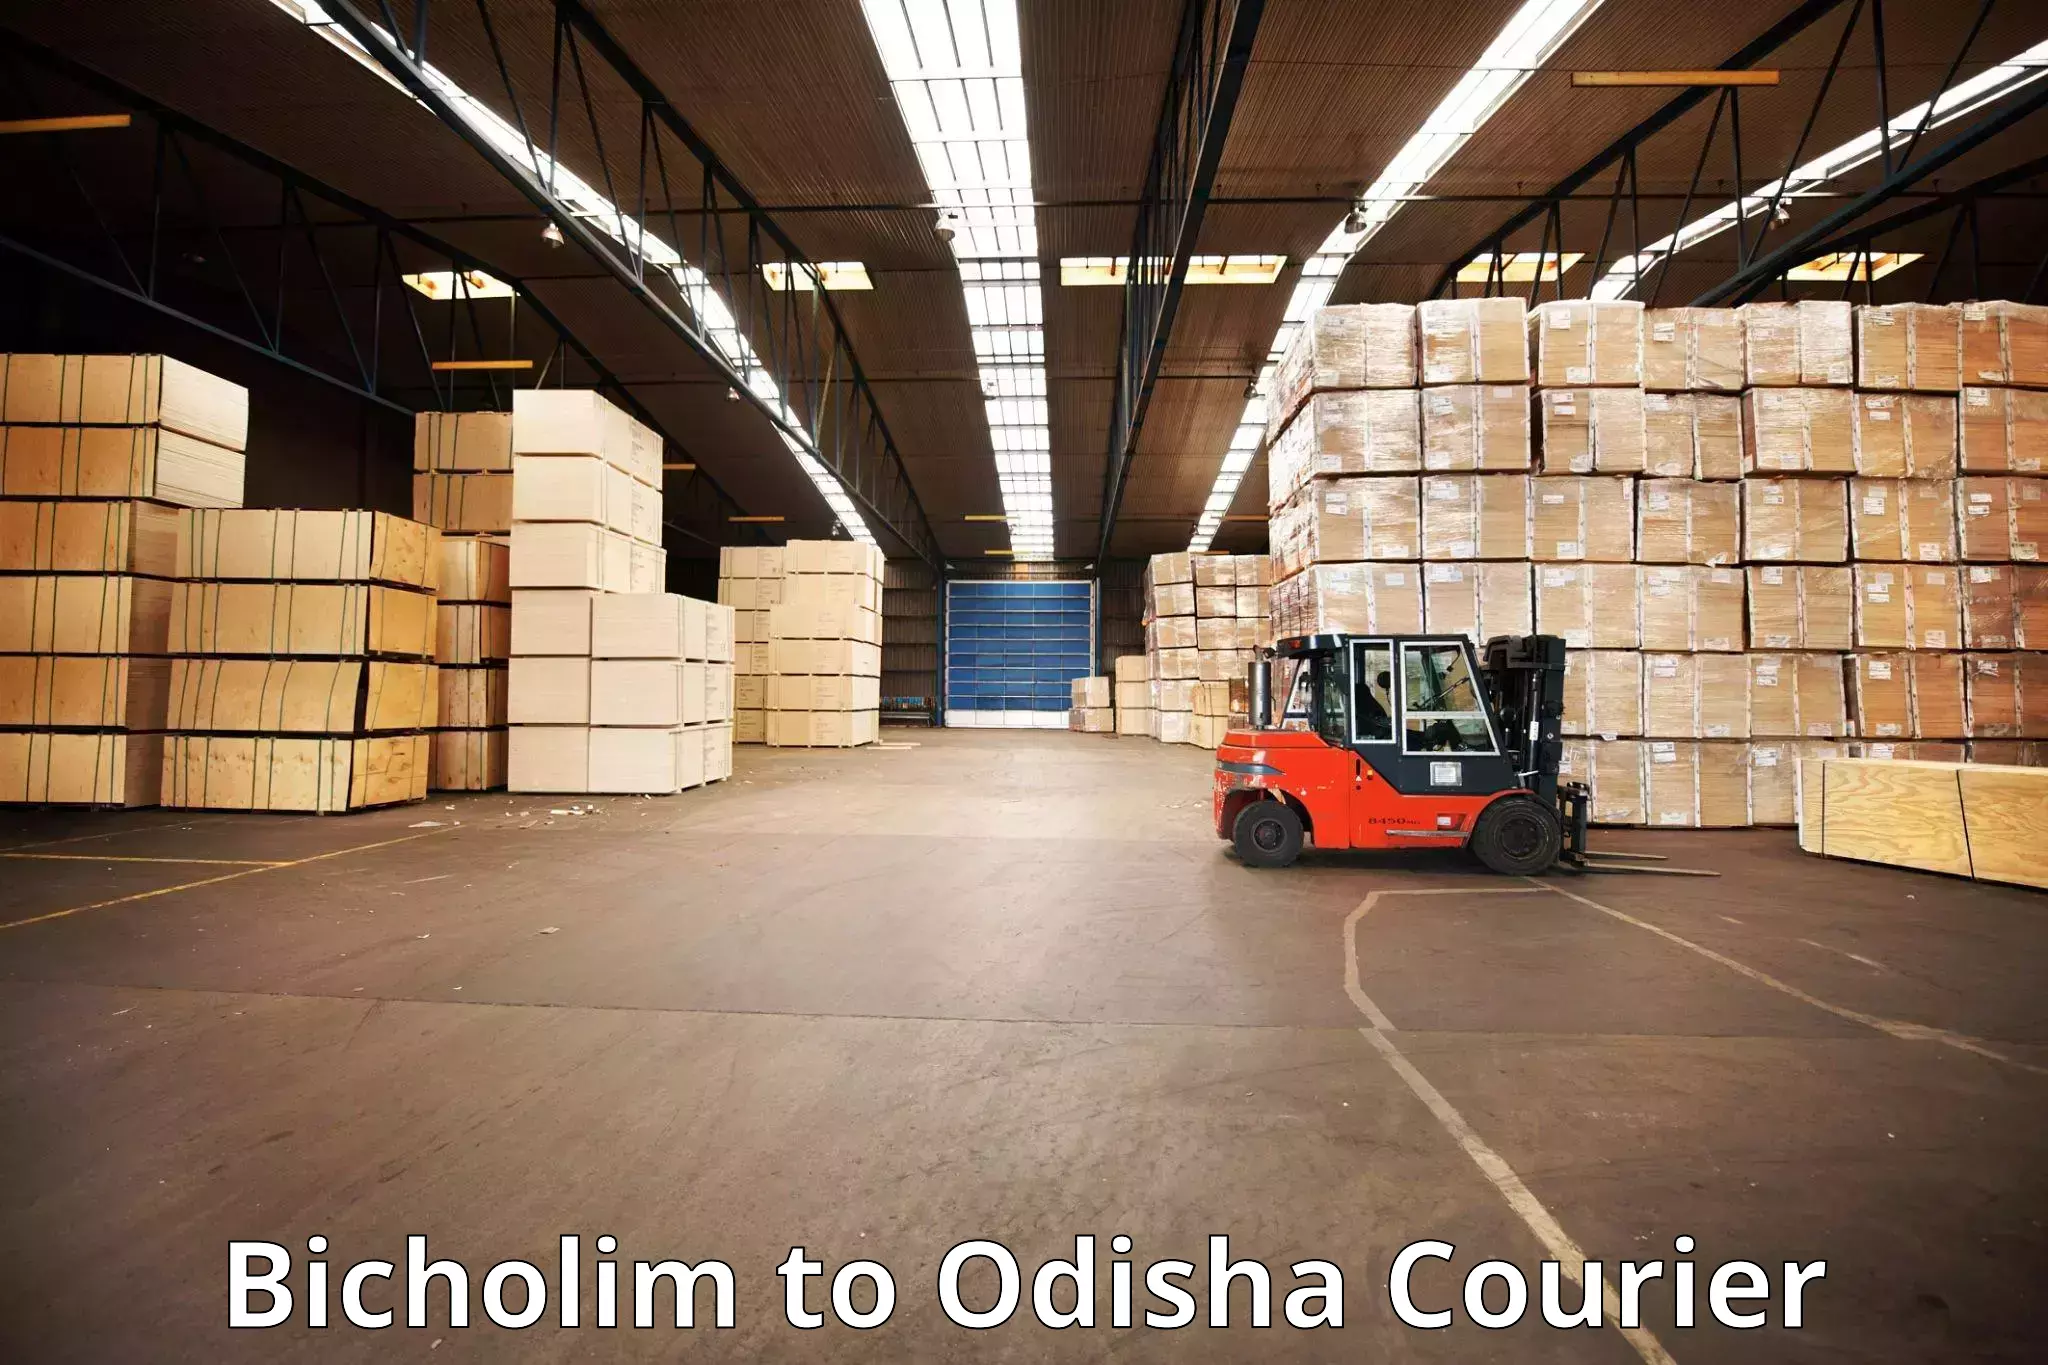 Baggage shipping service Bicholim to Raruan